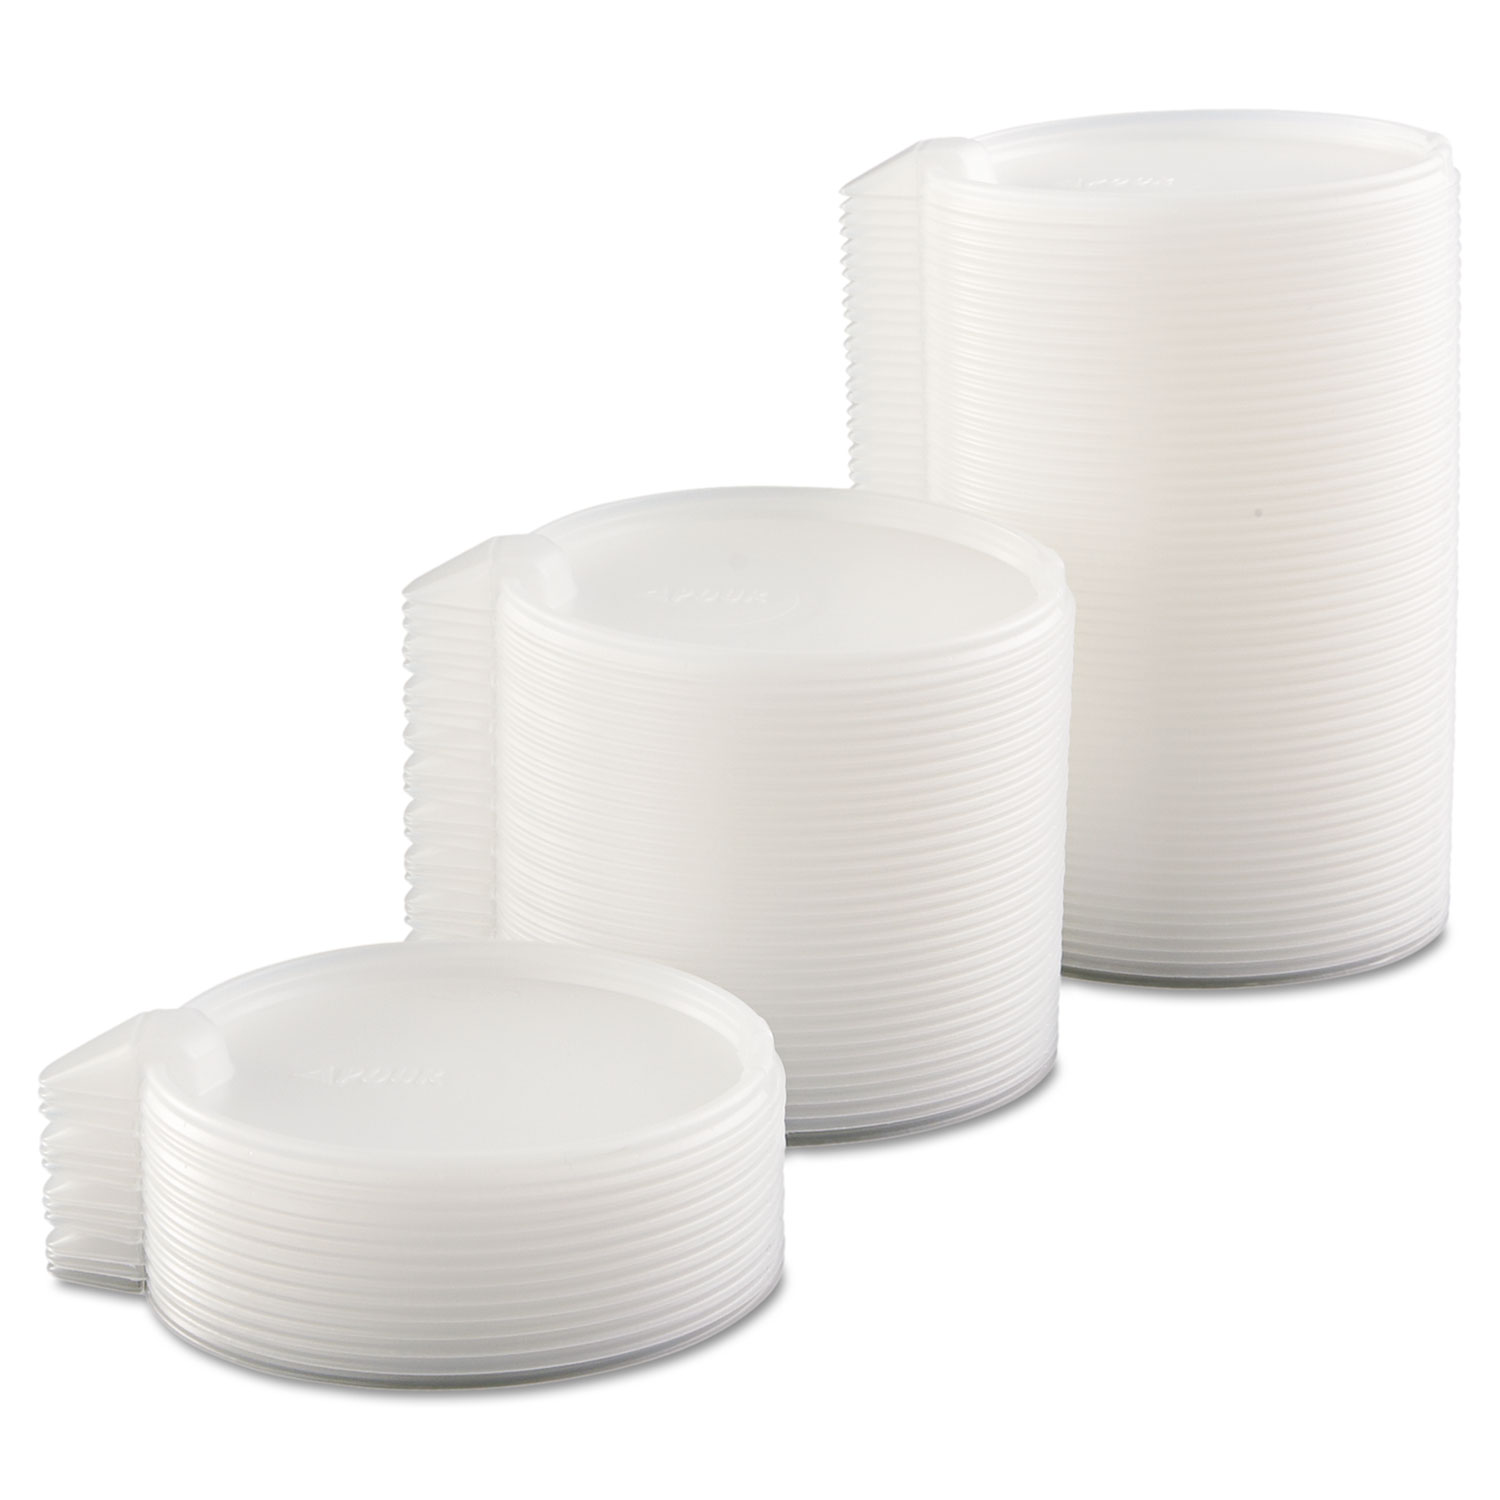 PS Plastic Lids, Fits 16-44oz Cups, Translucent, 500/Carton